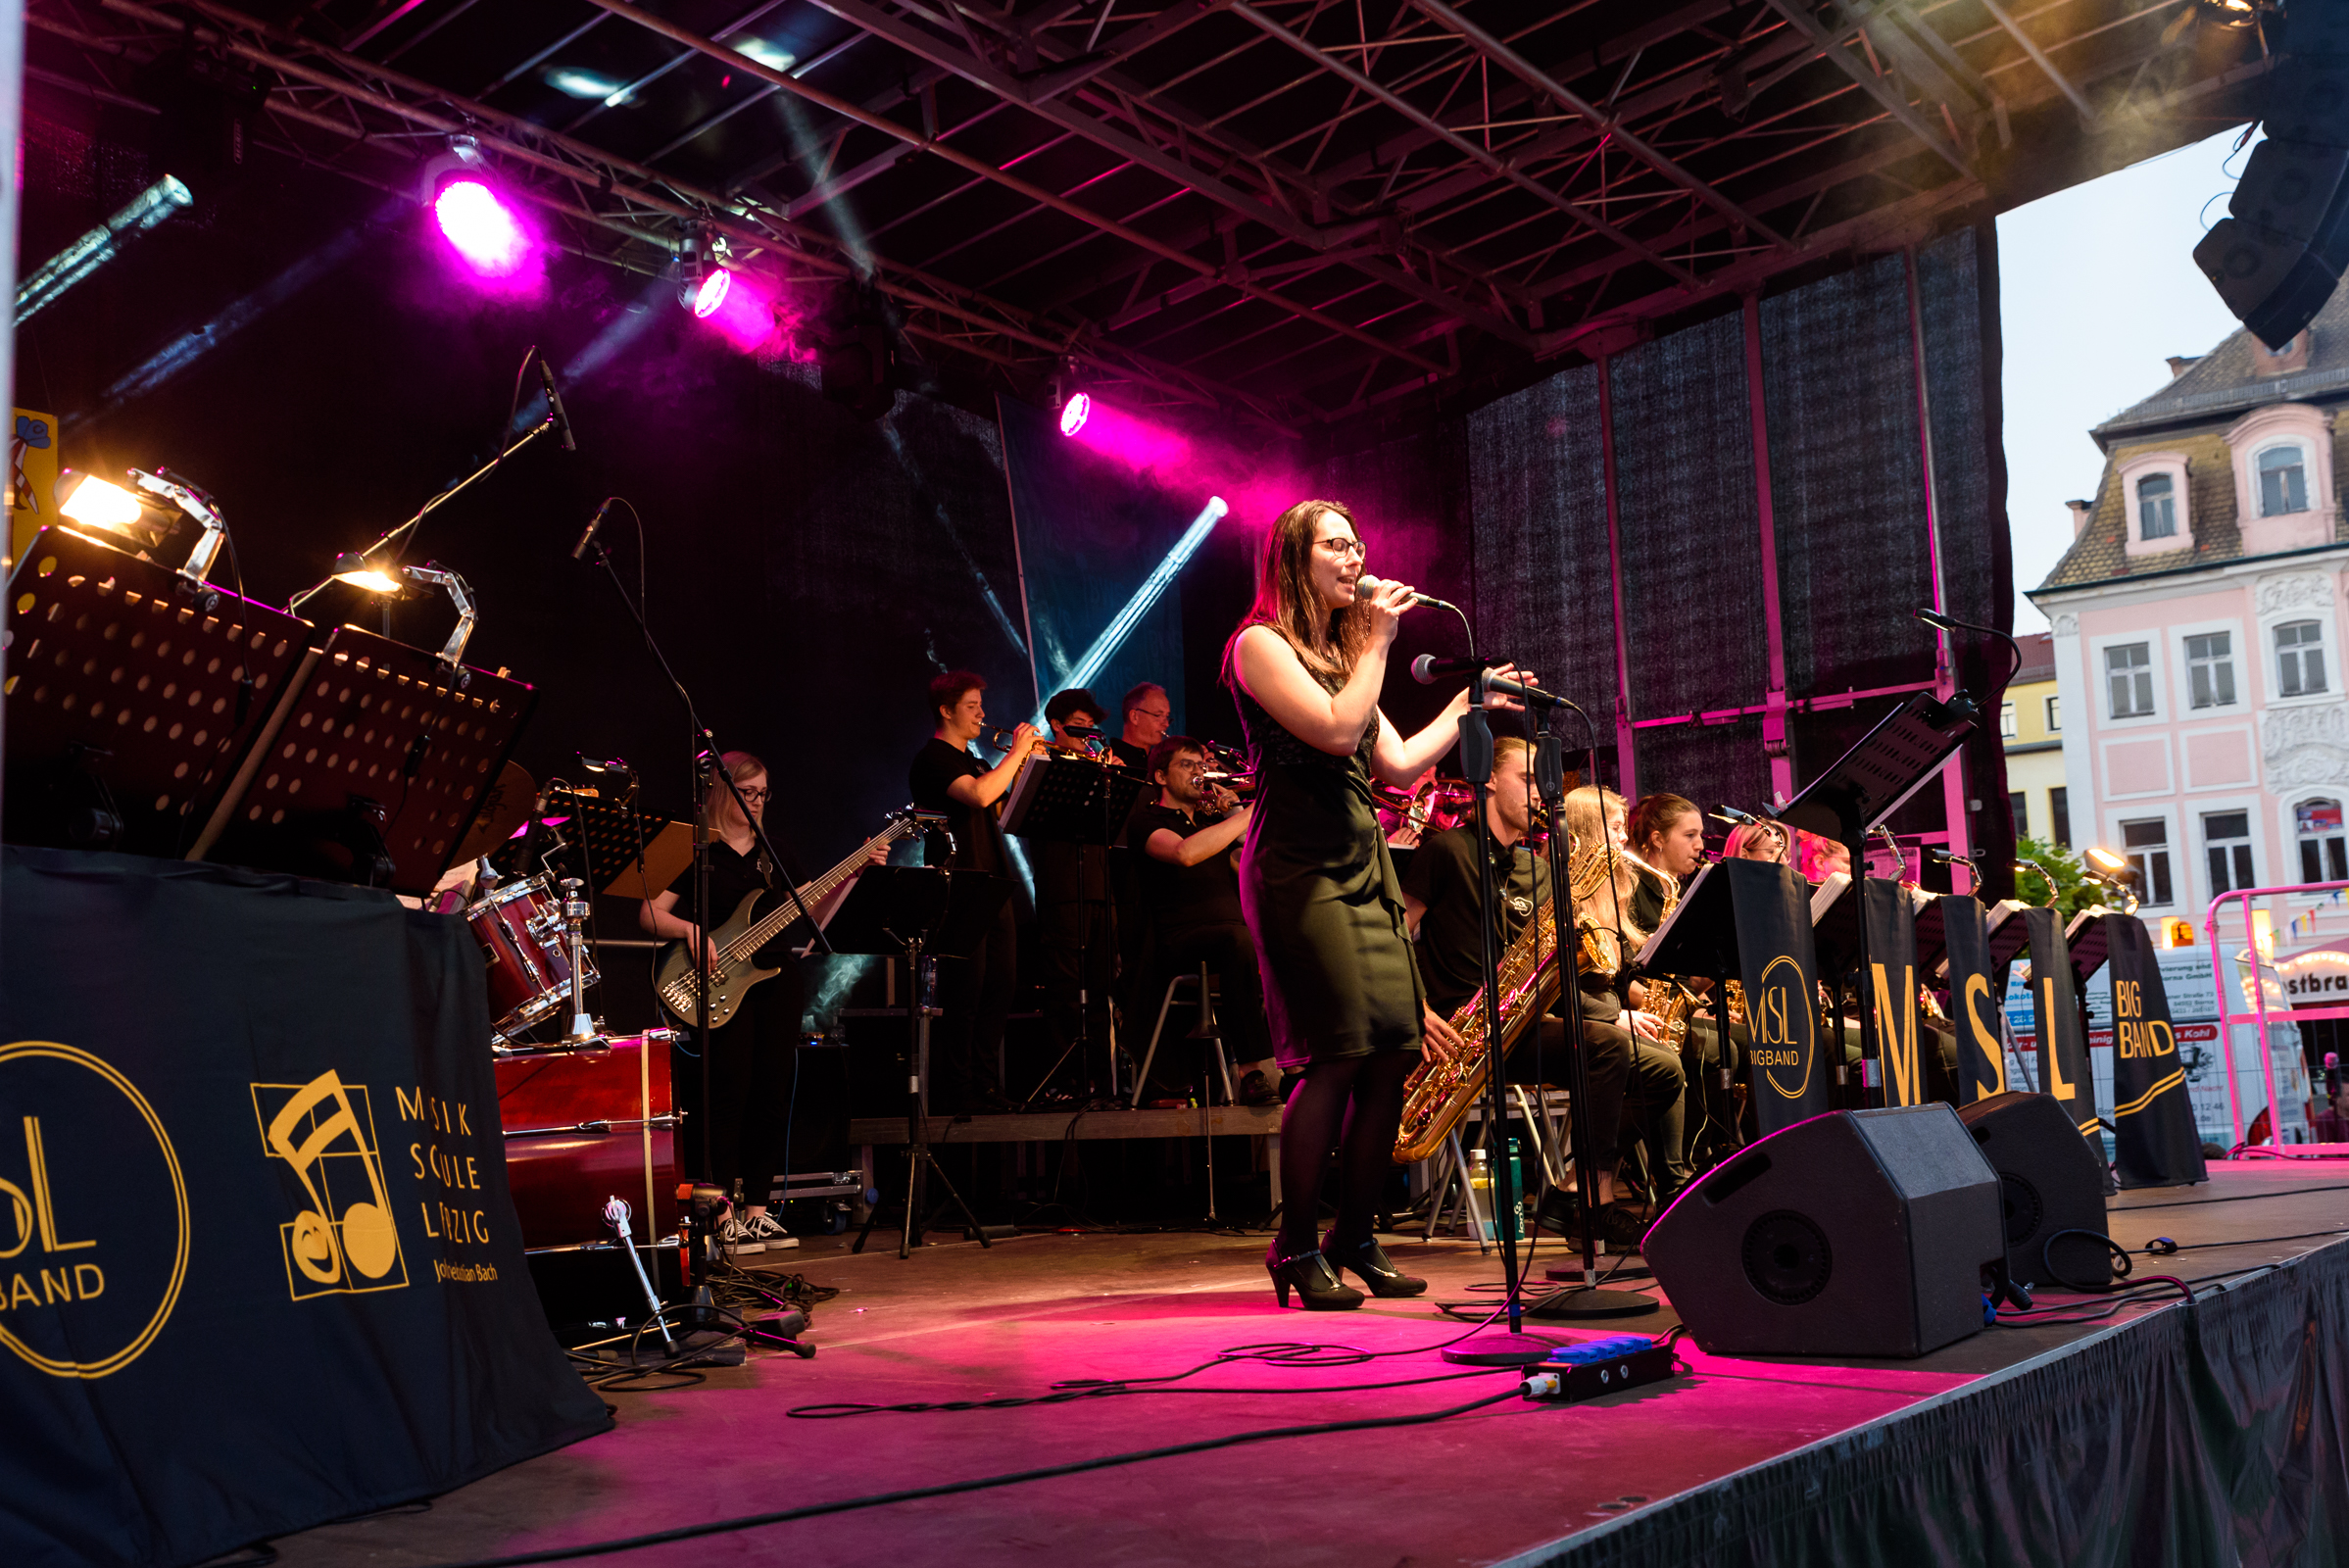 die MSL Bigband beim auf der bühne beim Stadtfest Borna, im Vordergrund eine Sängerin, im Hintergrund Musiker:innen mit diversen Instrumenten